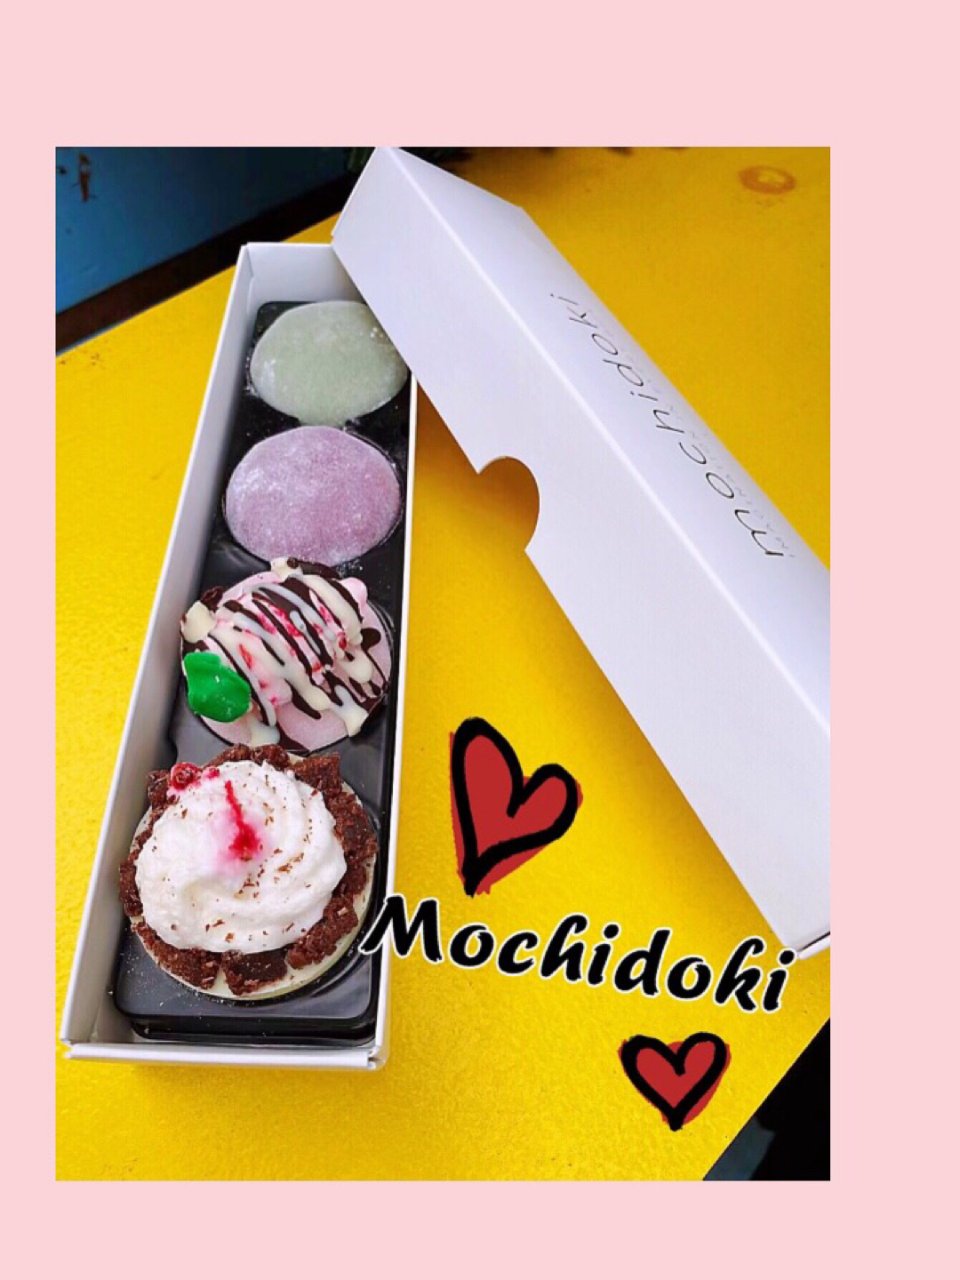 Mochidoki 麻薯冰淇淋网红店...